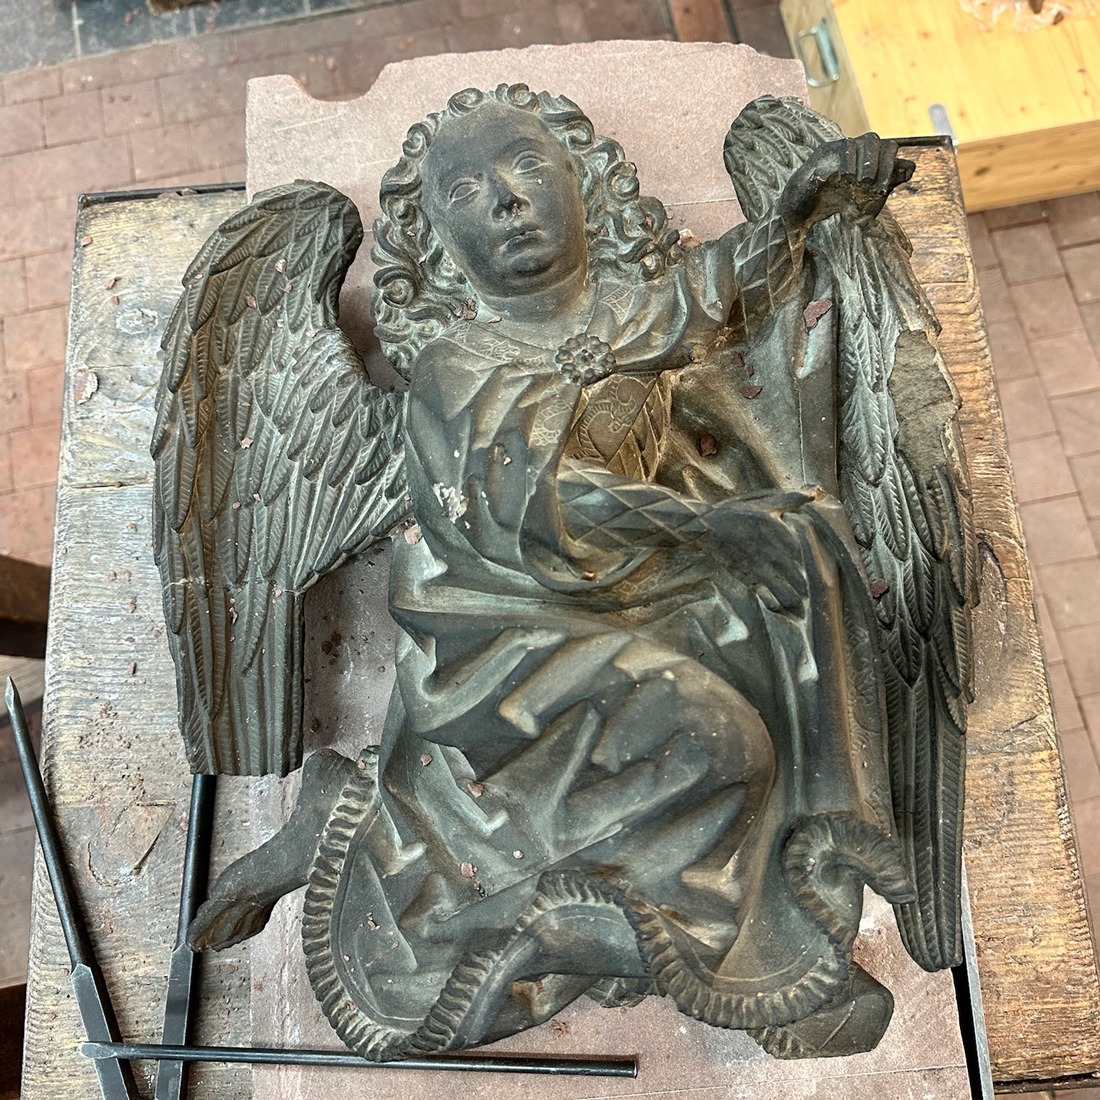 La sculpture originale de l'Ange à plumes, crédit : F.OND